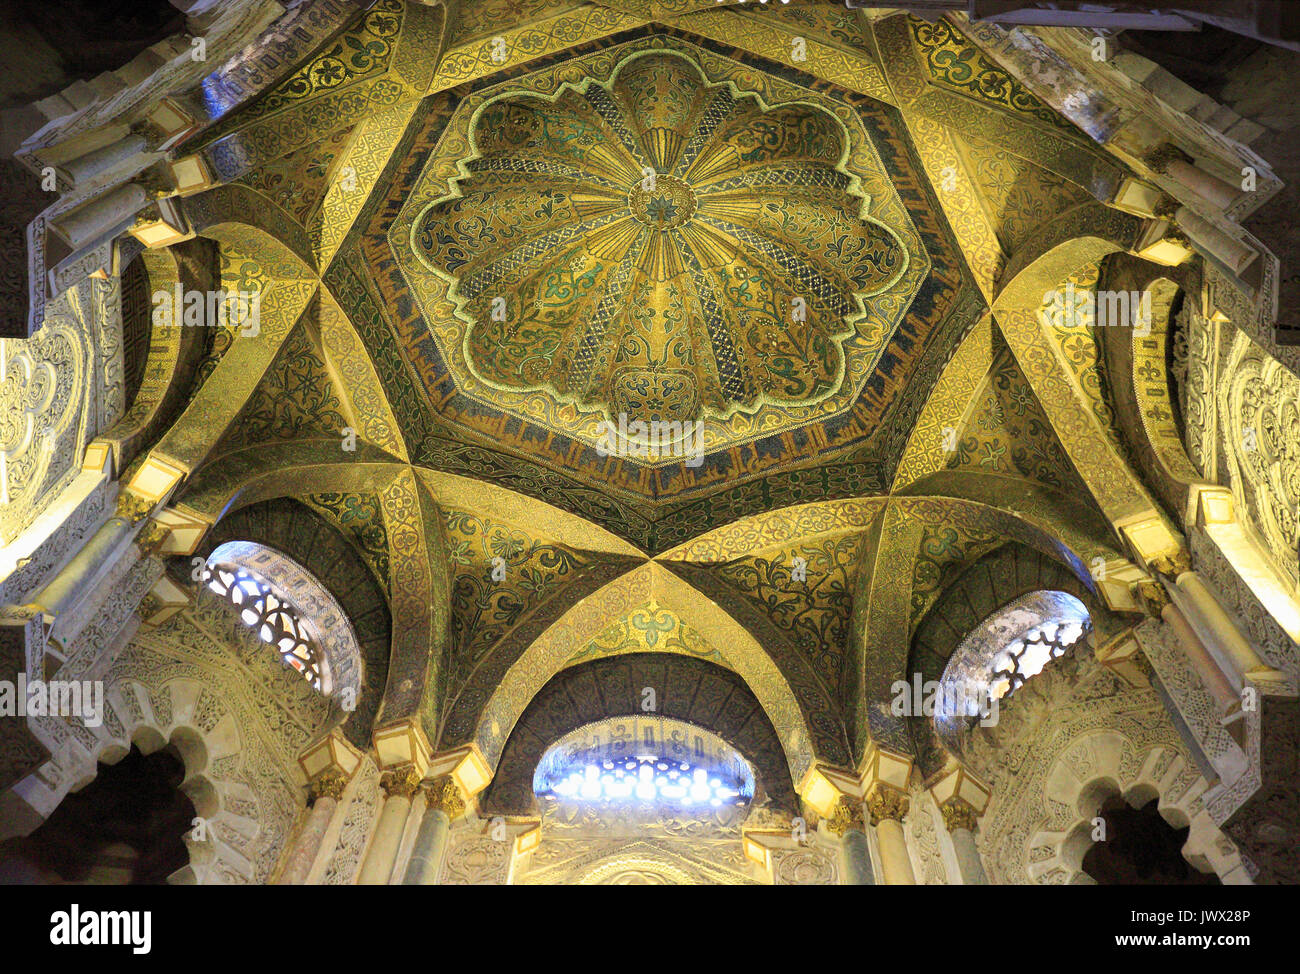 CORDOBA, Spagna - 30 giugno 2017: all'interno della moschea e la cattedrale di Cordoba. È il monumento più importante di tutti i Western mondo islamico. Foto Stock